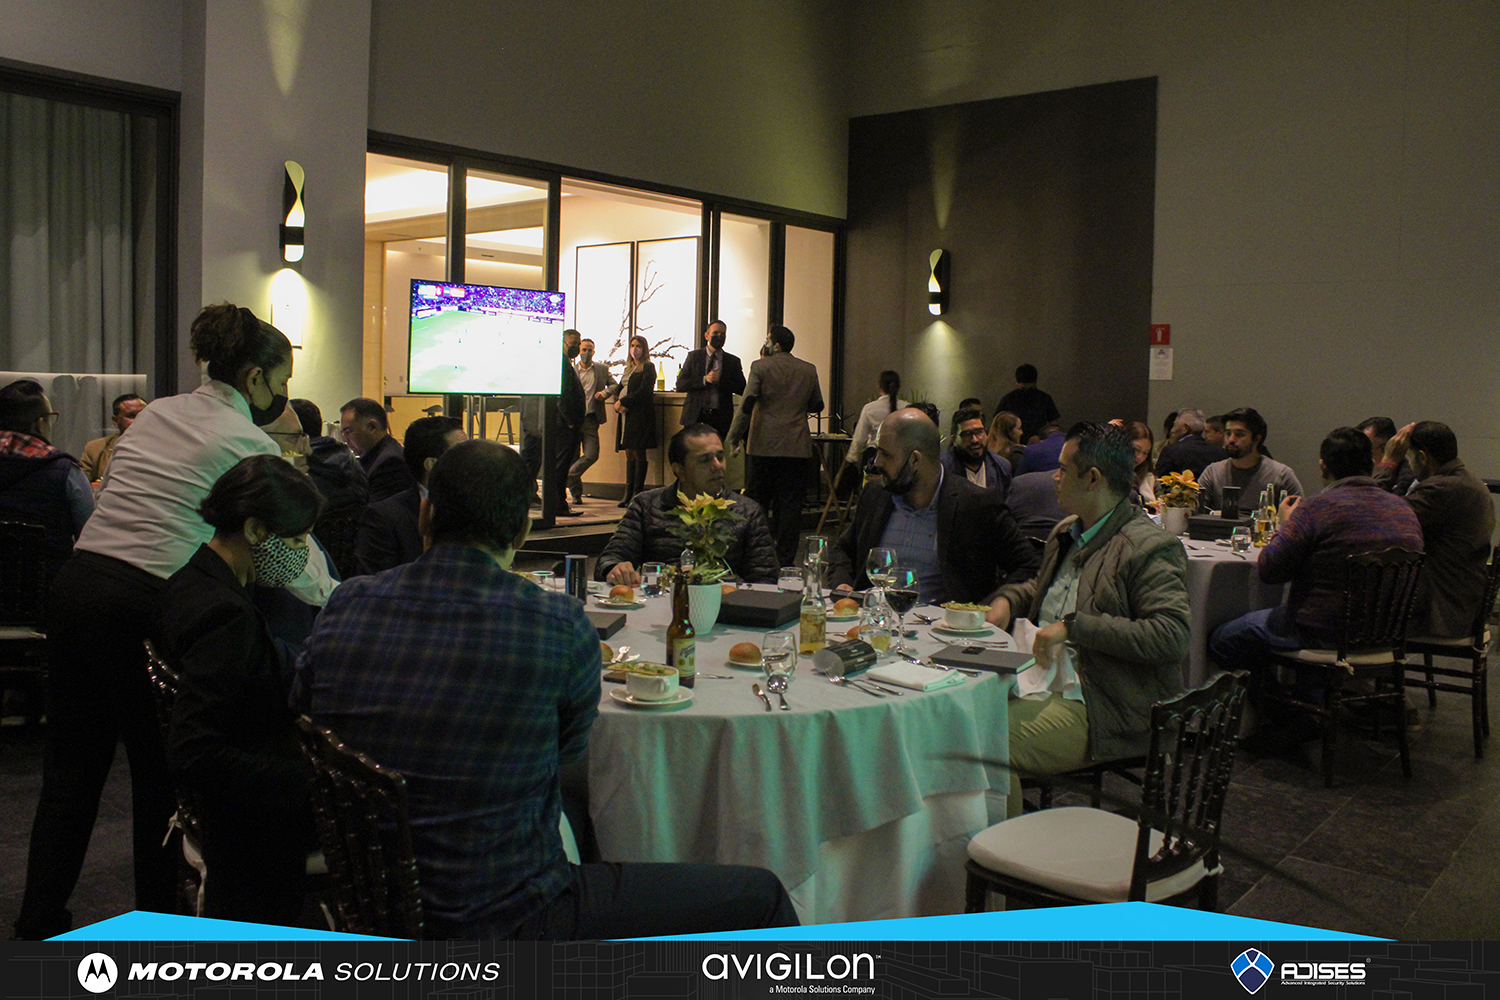 Asistentes a la cena organizada por ADISES, Motorola Solutions y Avigilon en Guadalajara (México)